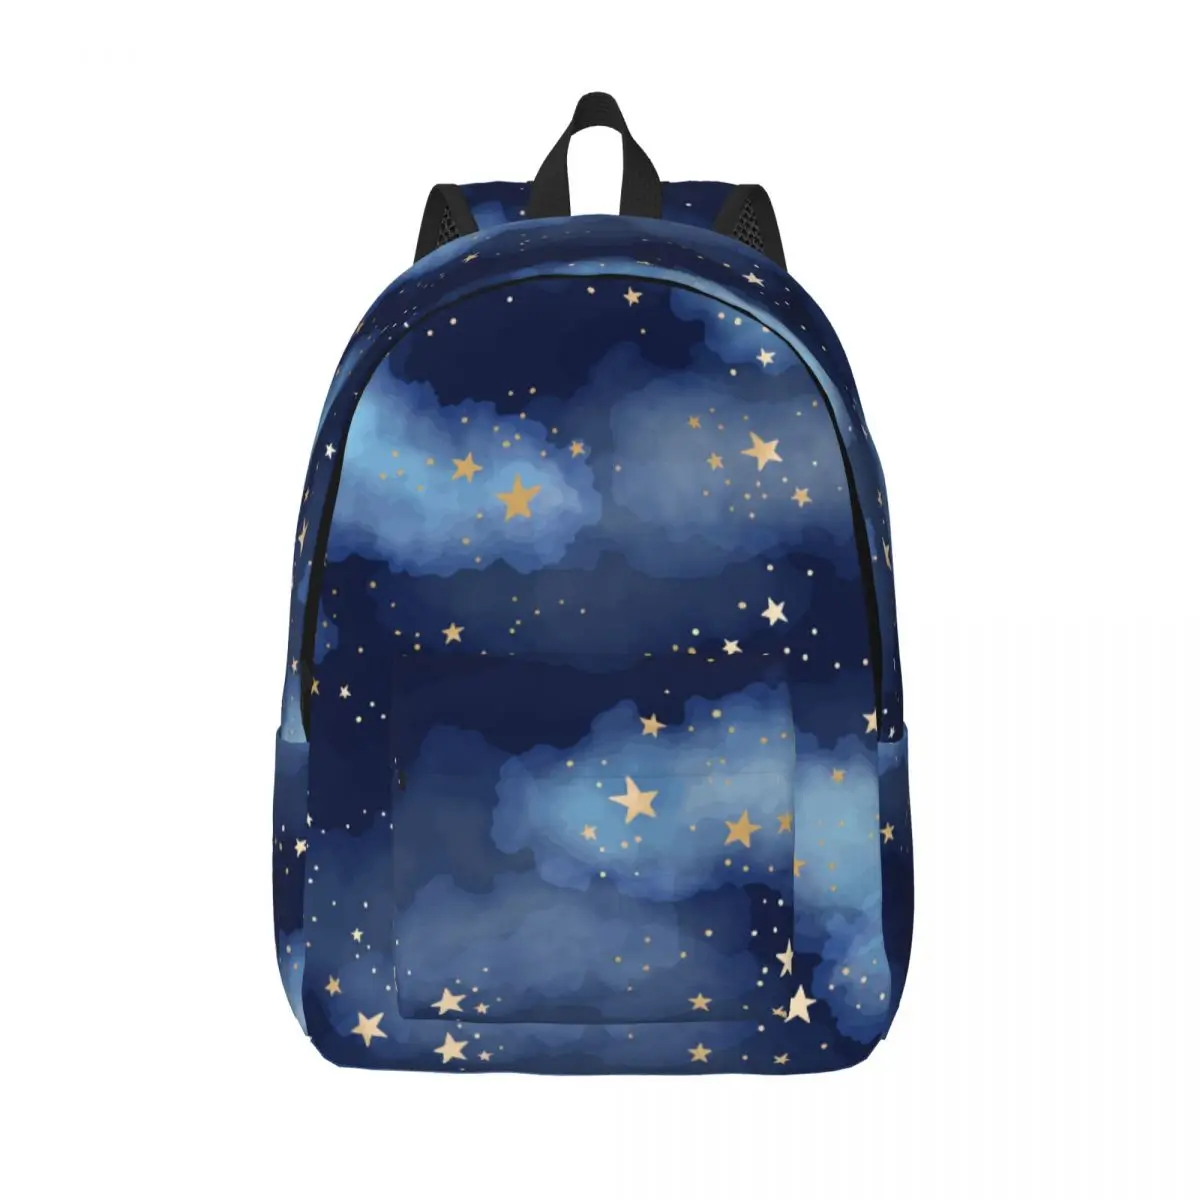 

Schoolbag Student Backpack Gold Foil Constellations Stars And Clouds Shoulder Backpack Laptop Bag School Backpack